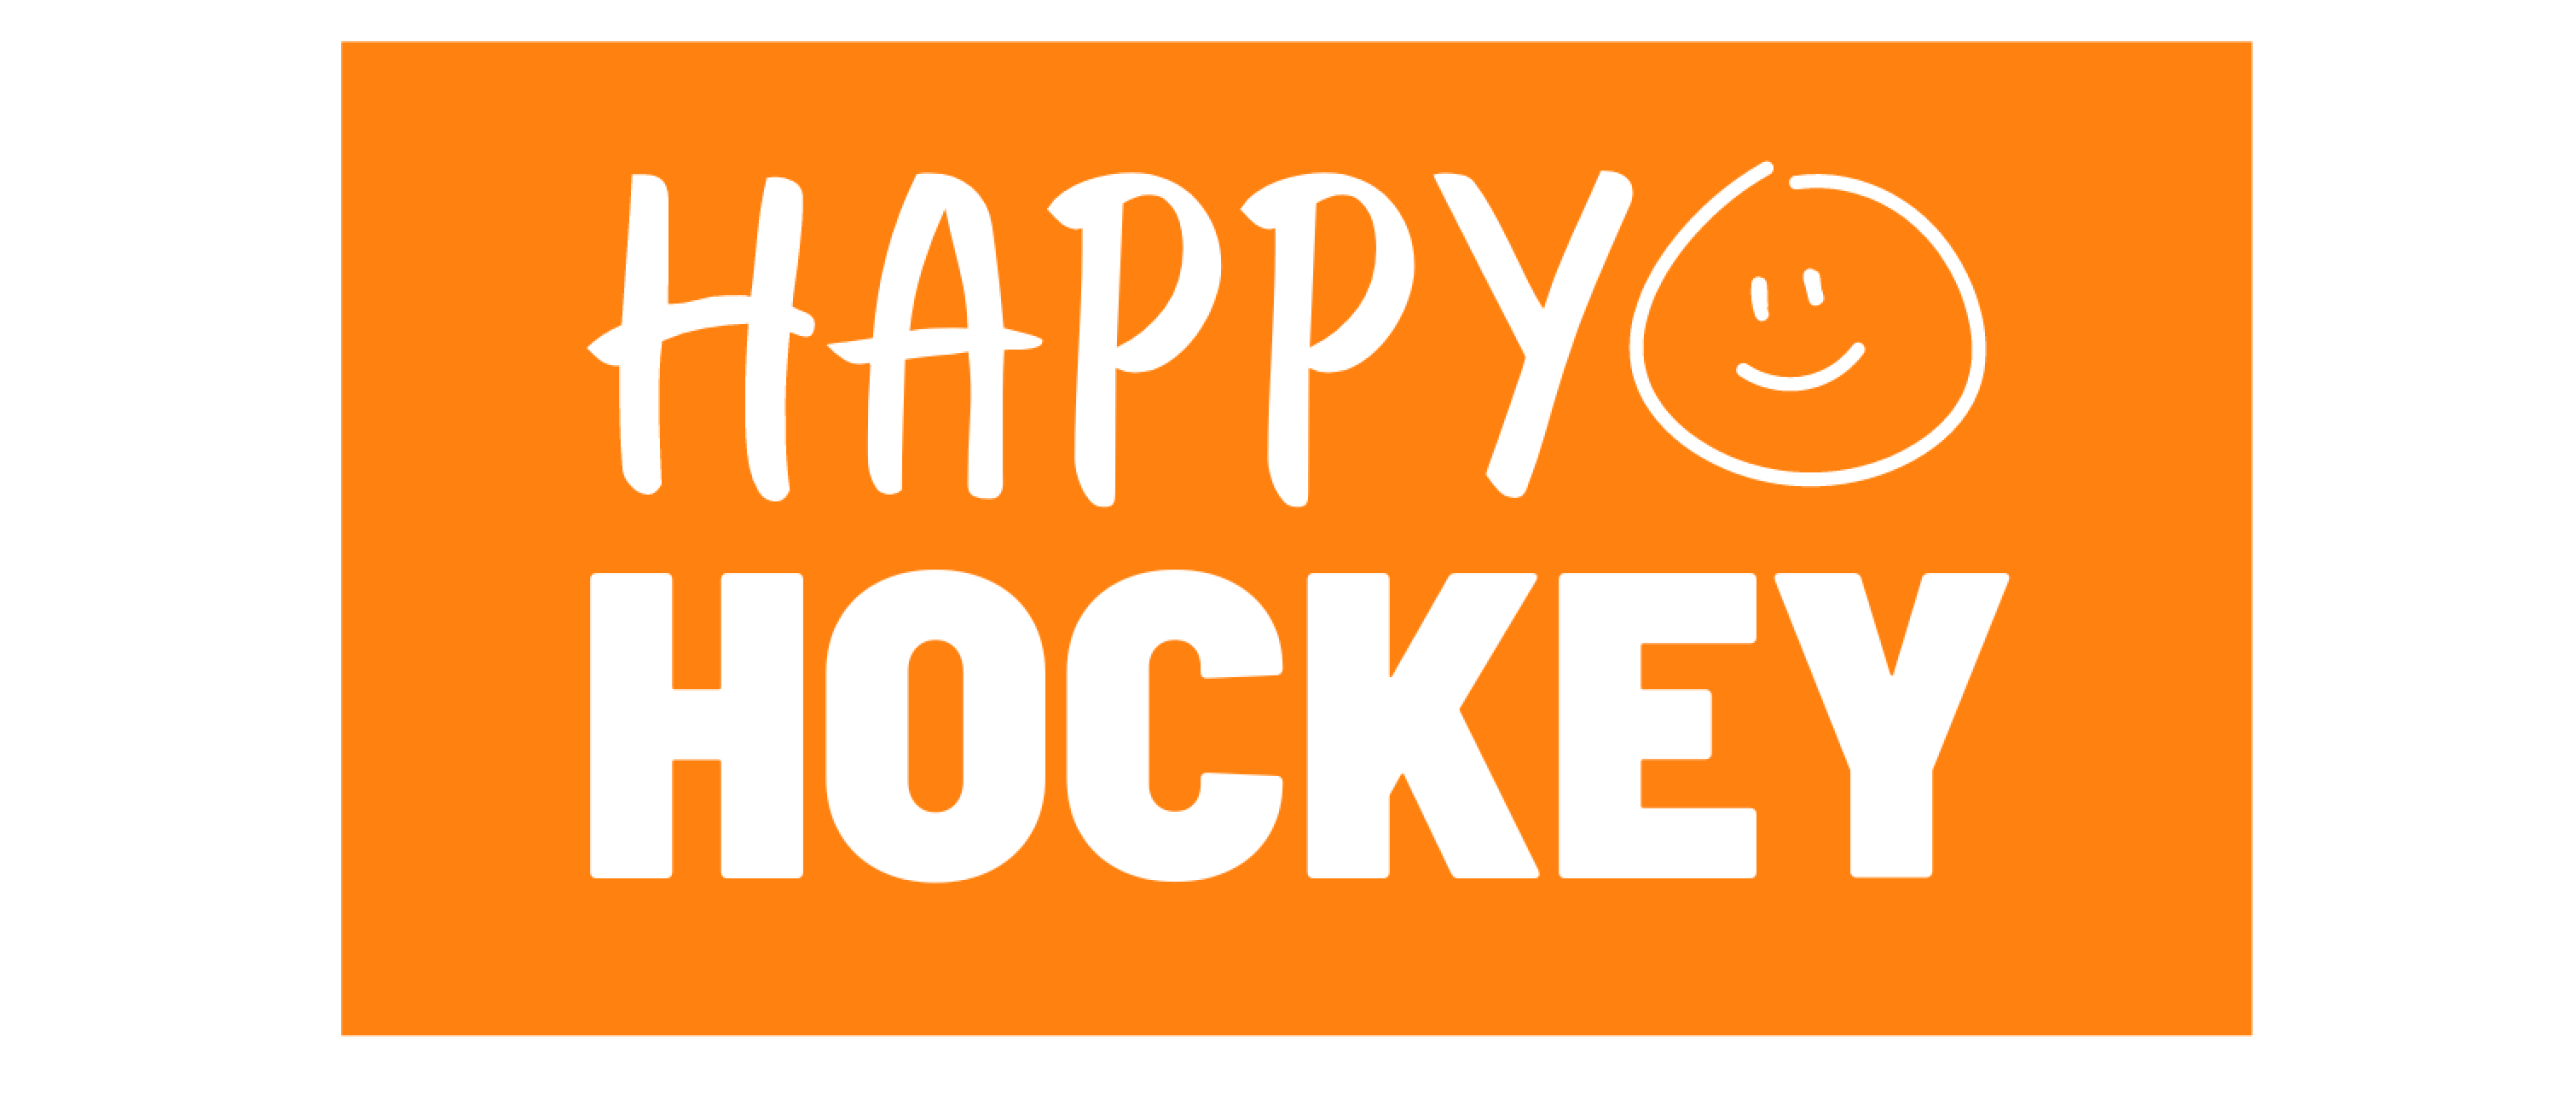 Happy Hockey